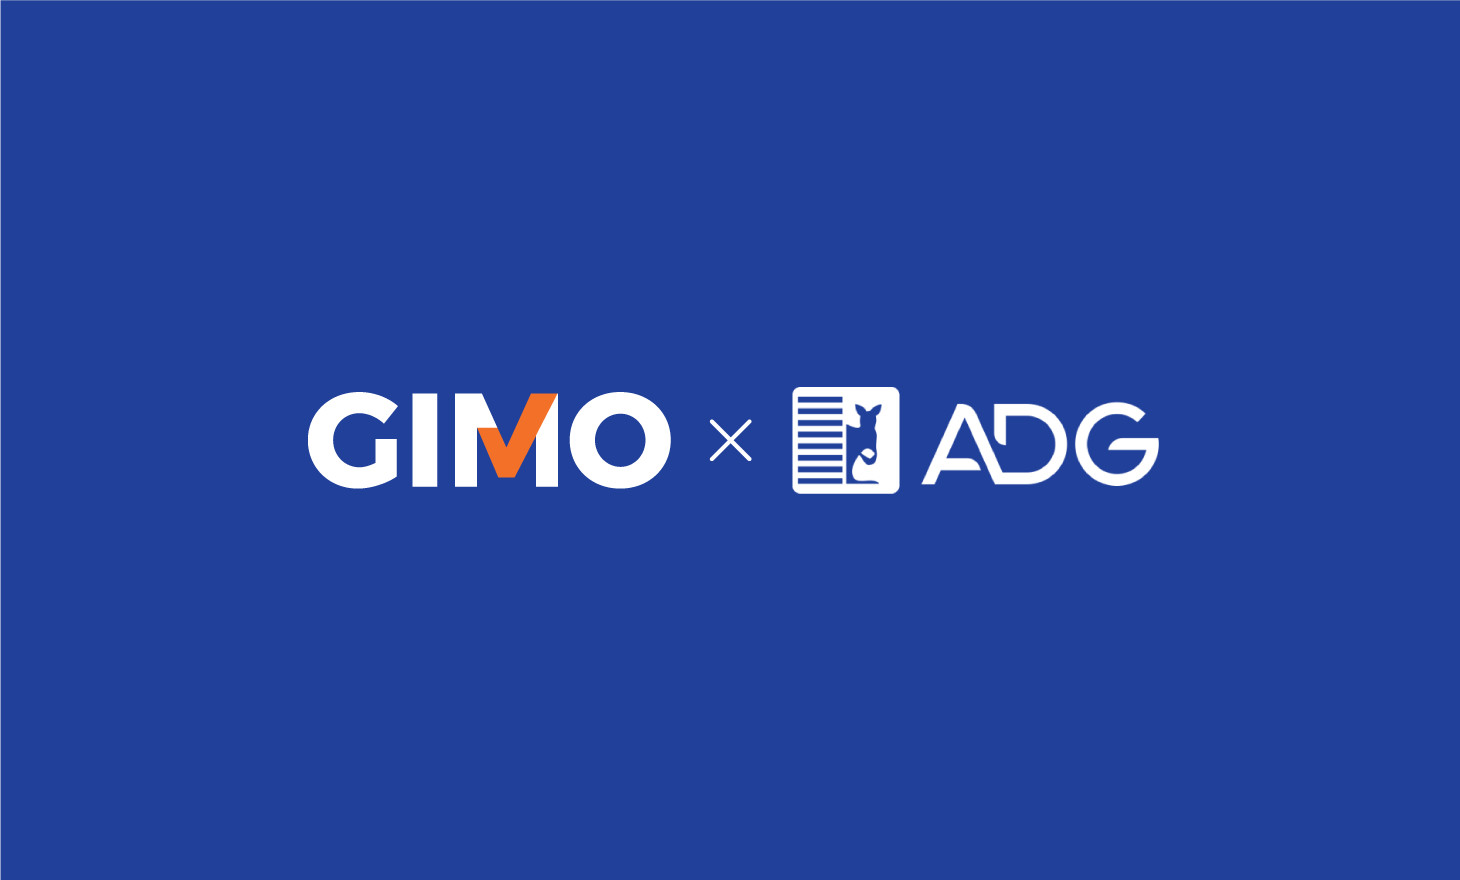 GIMO x ADG: Chương trình phúc lợi tại một trong top 500 doanh nghiệp lớn nhất Việt Nam